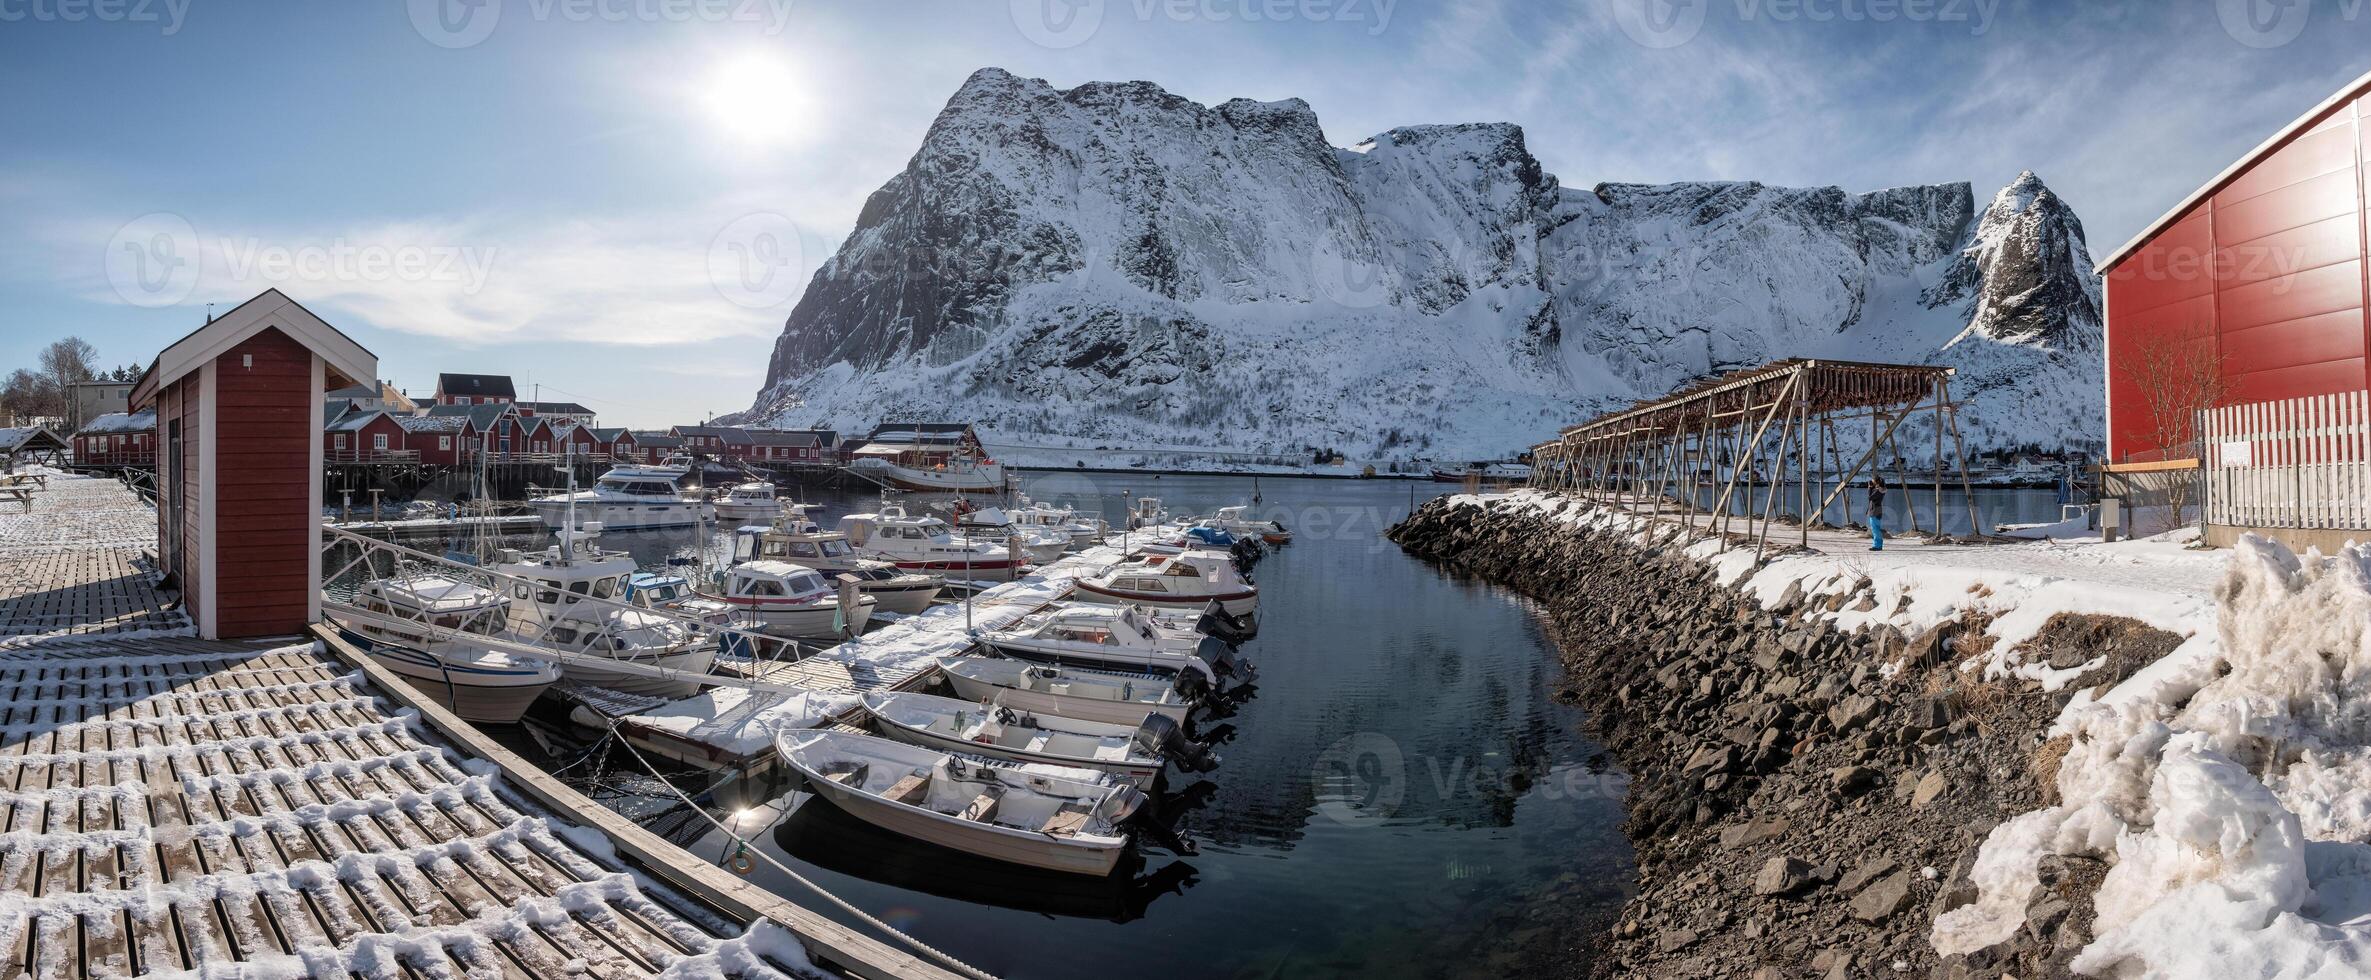 lofoten öar med fiske by och båtar på kustlinje i vinter- på Norge foto